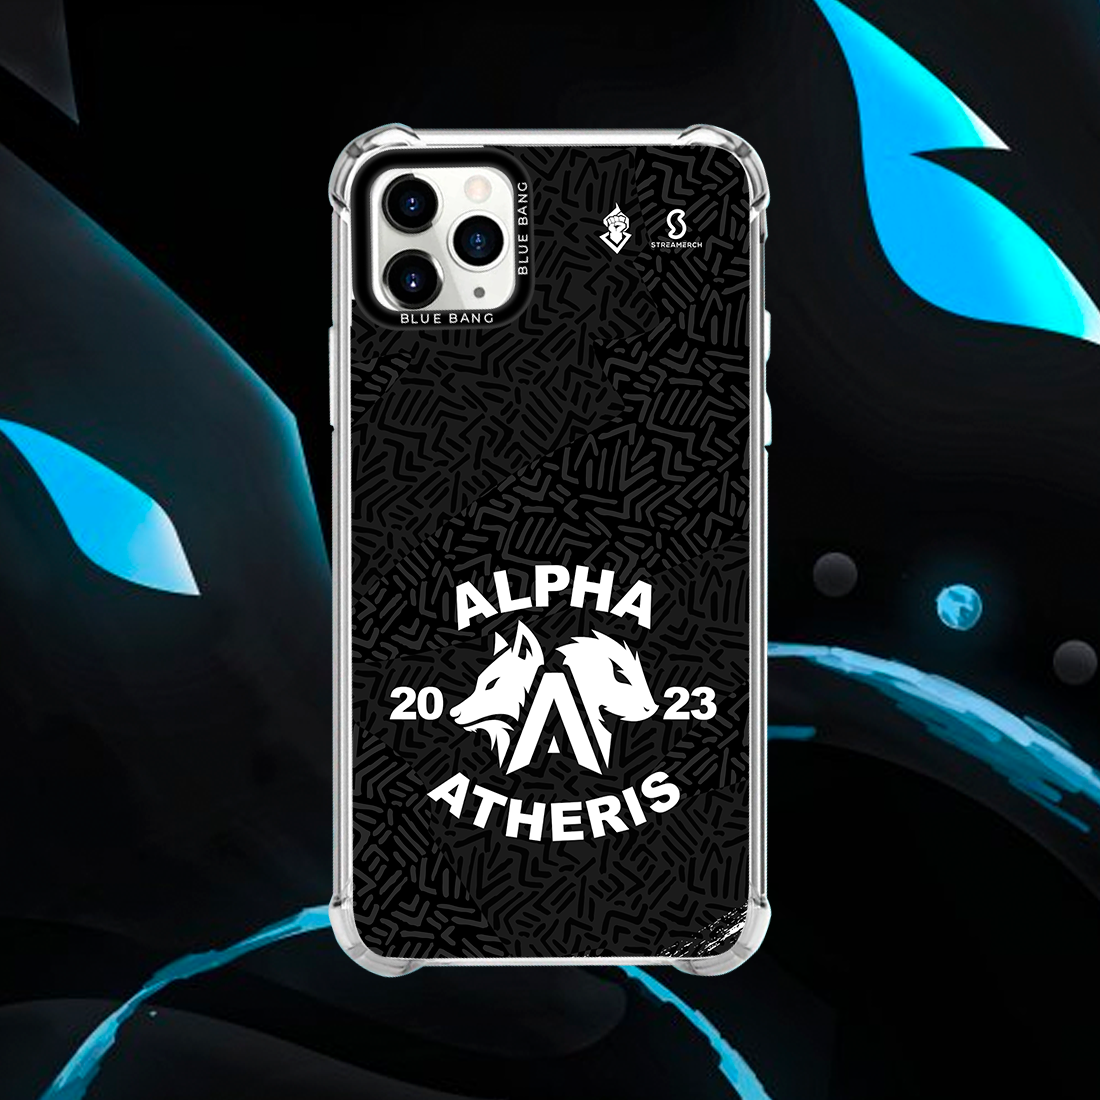 Funda para celulares hológrafica Alpha Atheris Negra